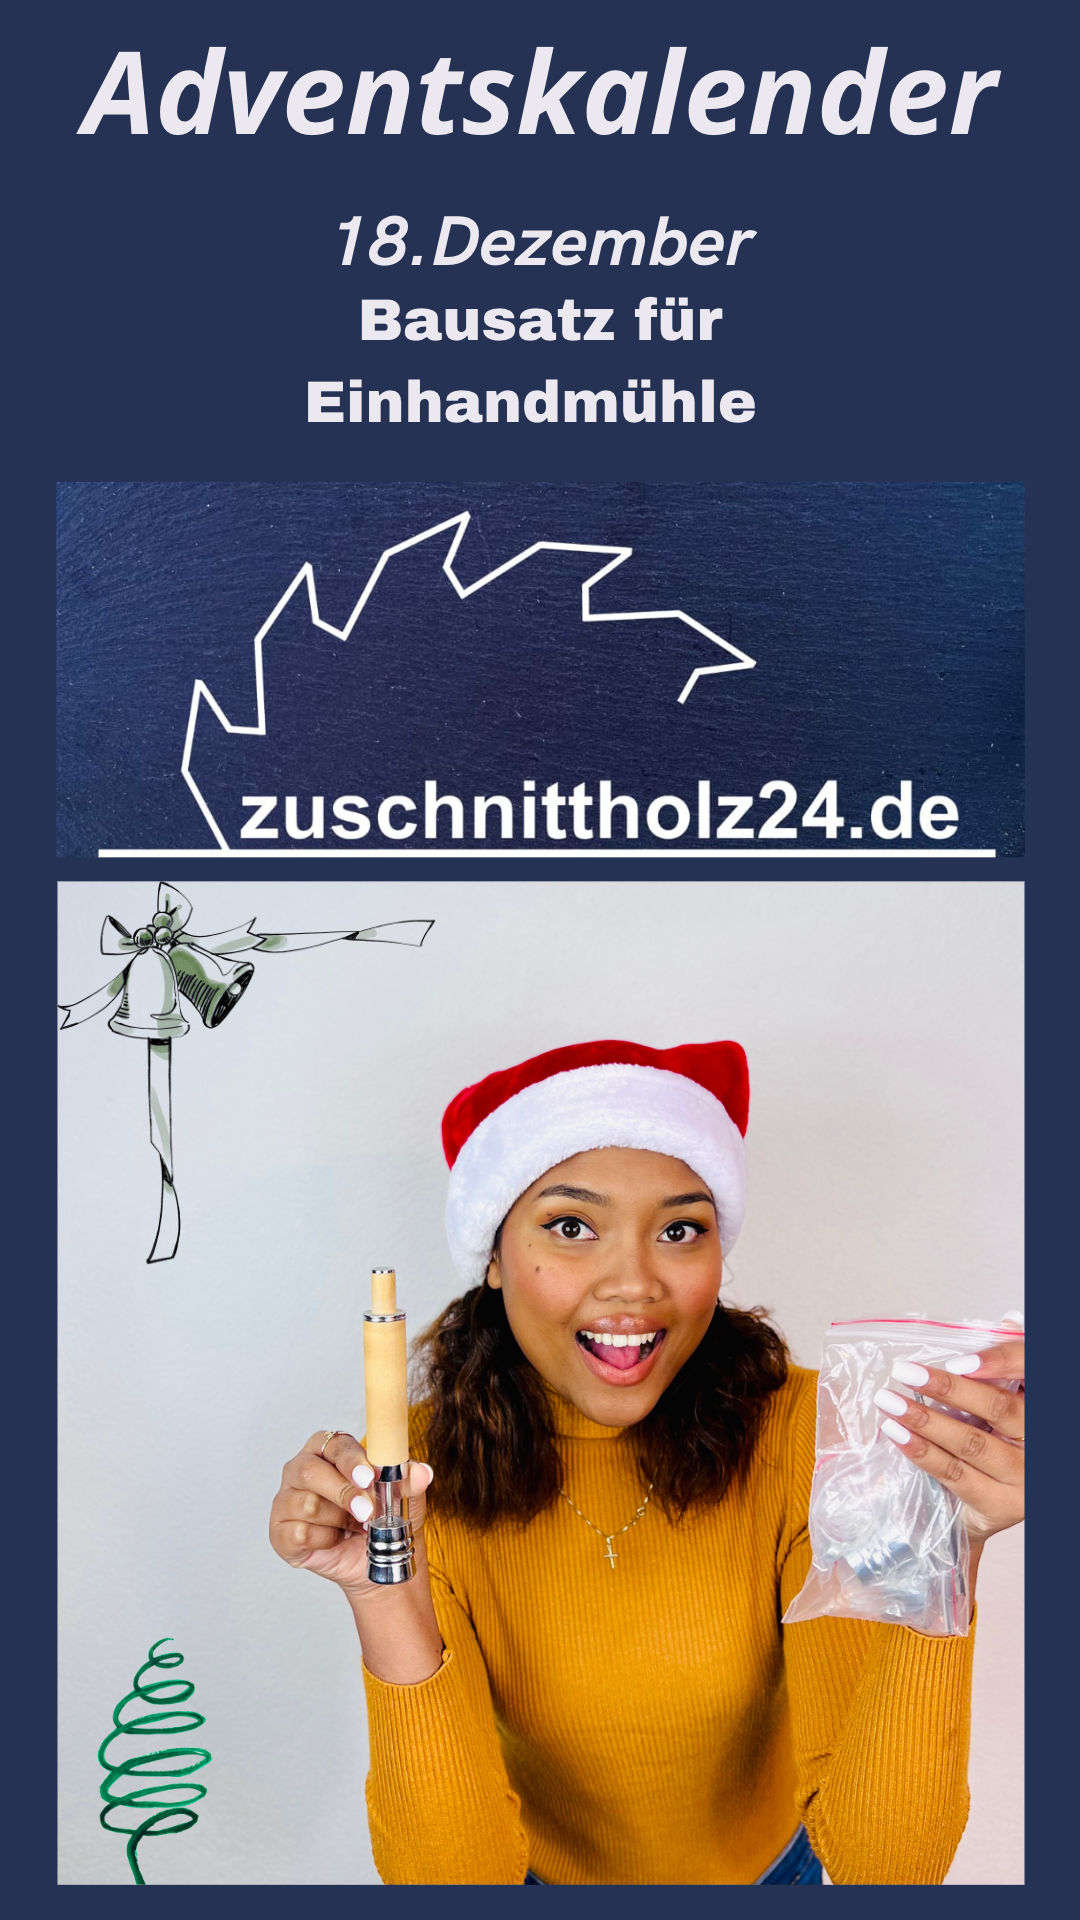 18.Adventskalender_Zuschnittholz24